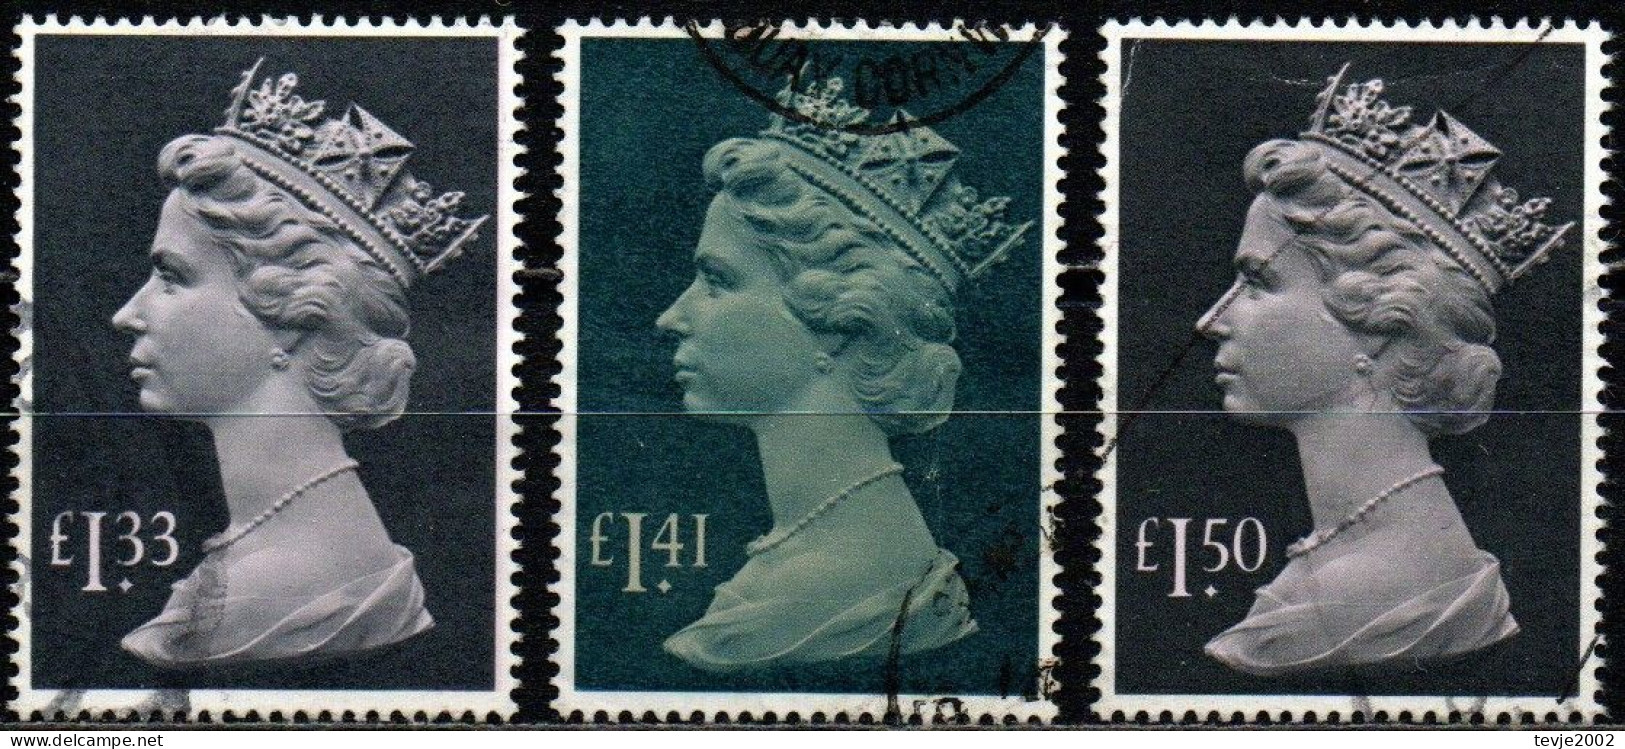 Großbritannien 1984 - 1986 - Mi.Nr. 1007 1043 1084 - Gestempelt Used - Machin - Série 'Machin'